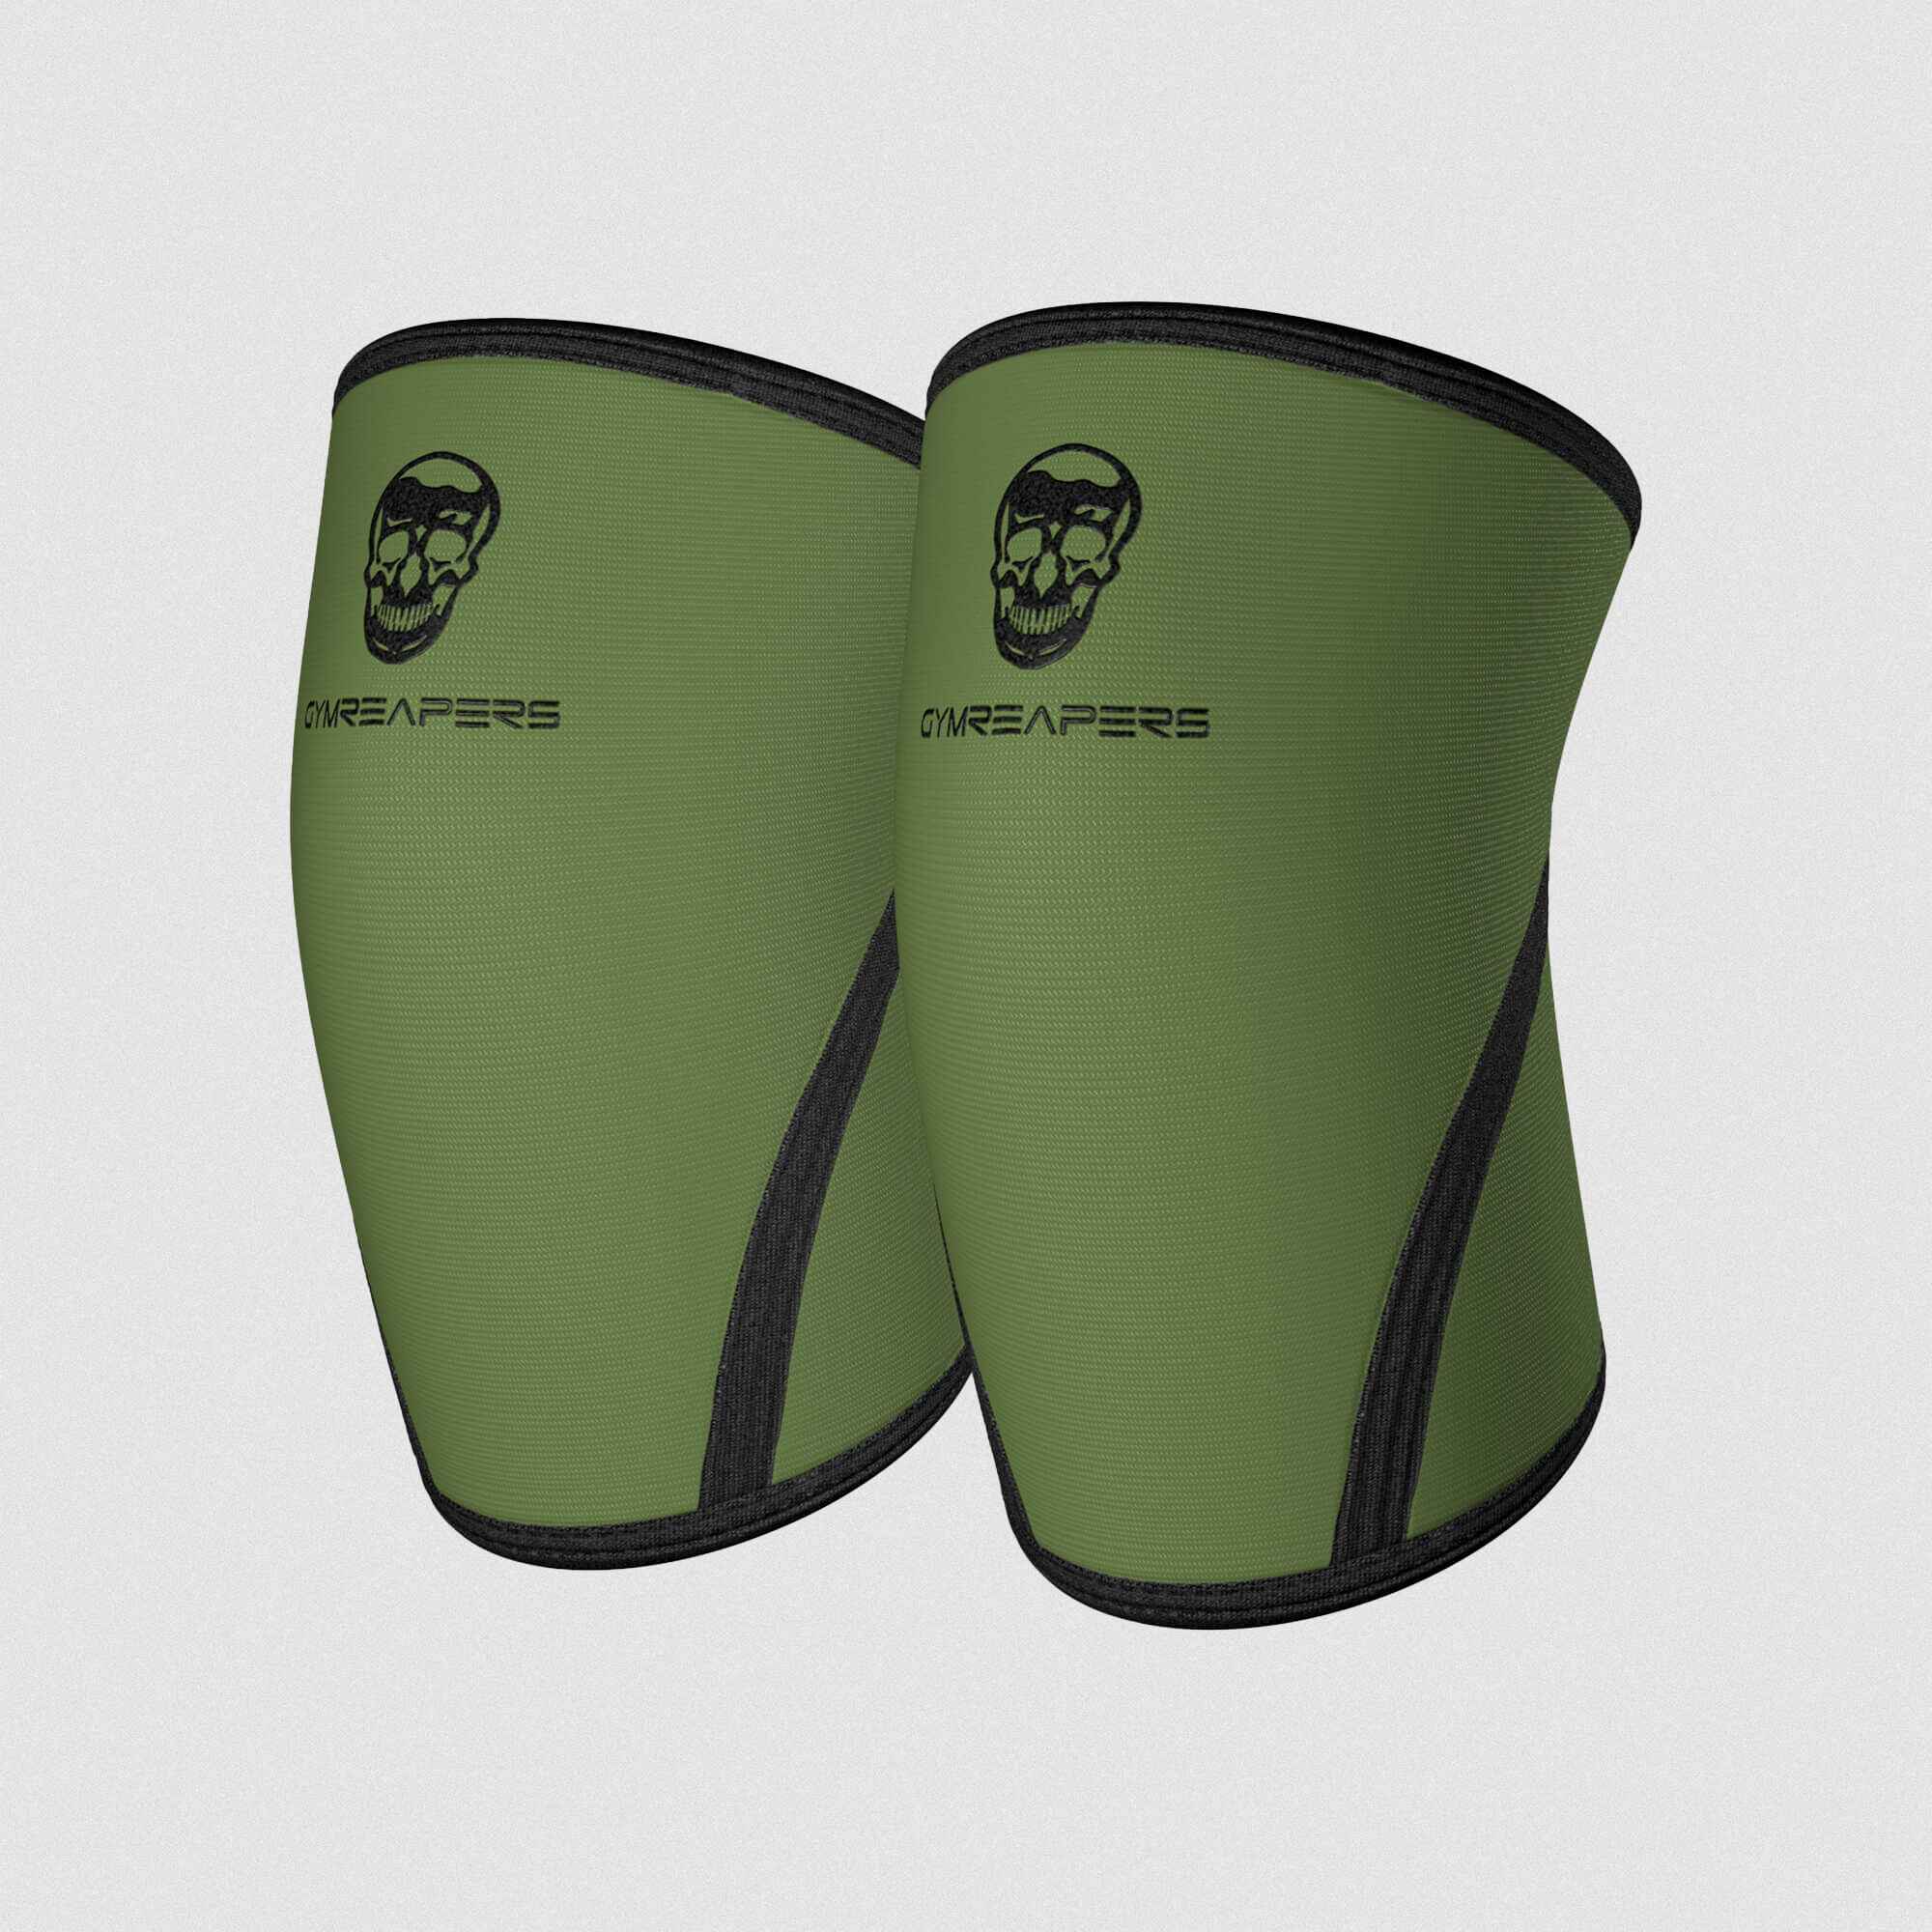 7mm knee sleeves green black main